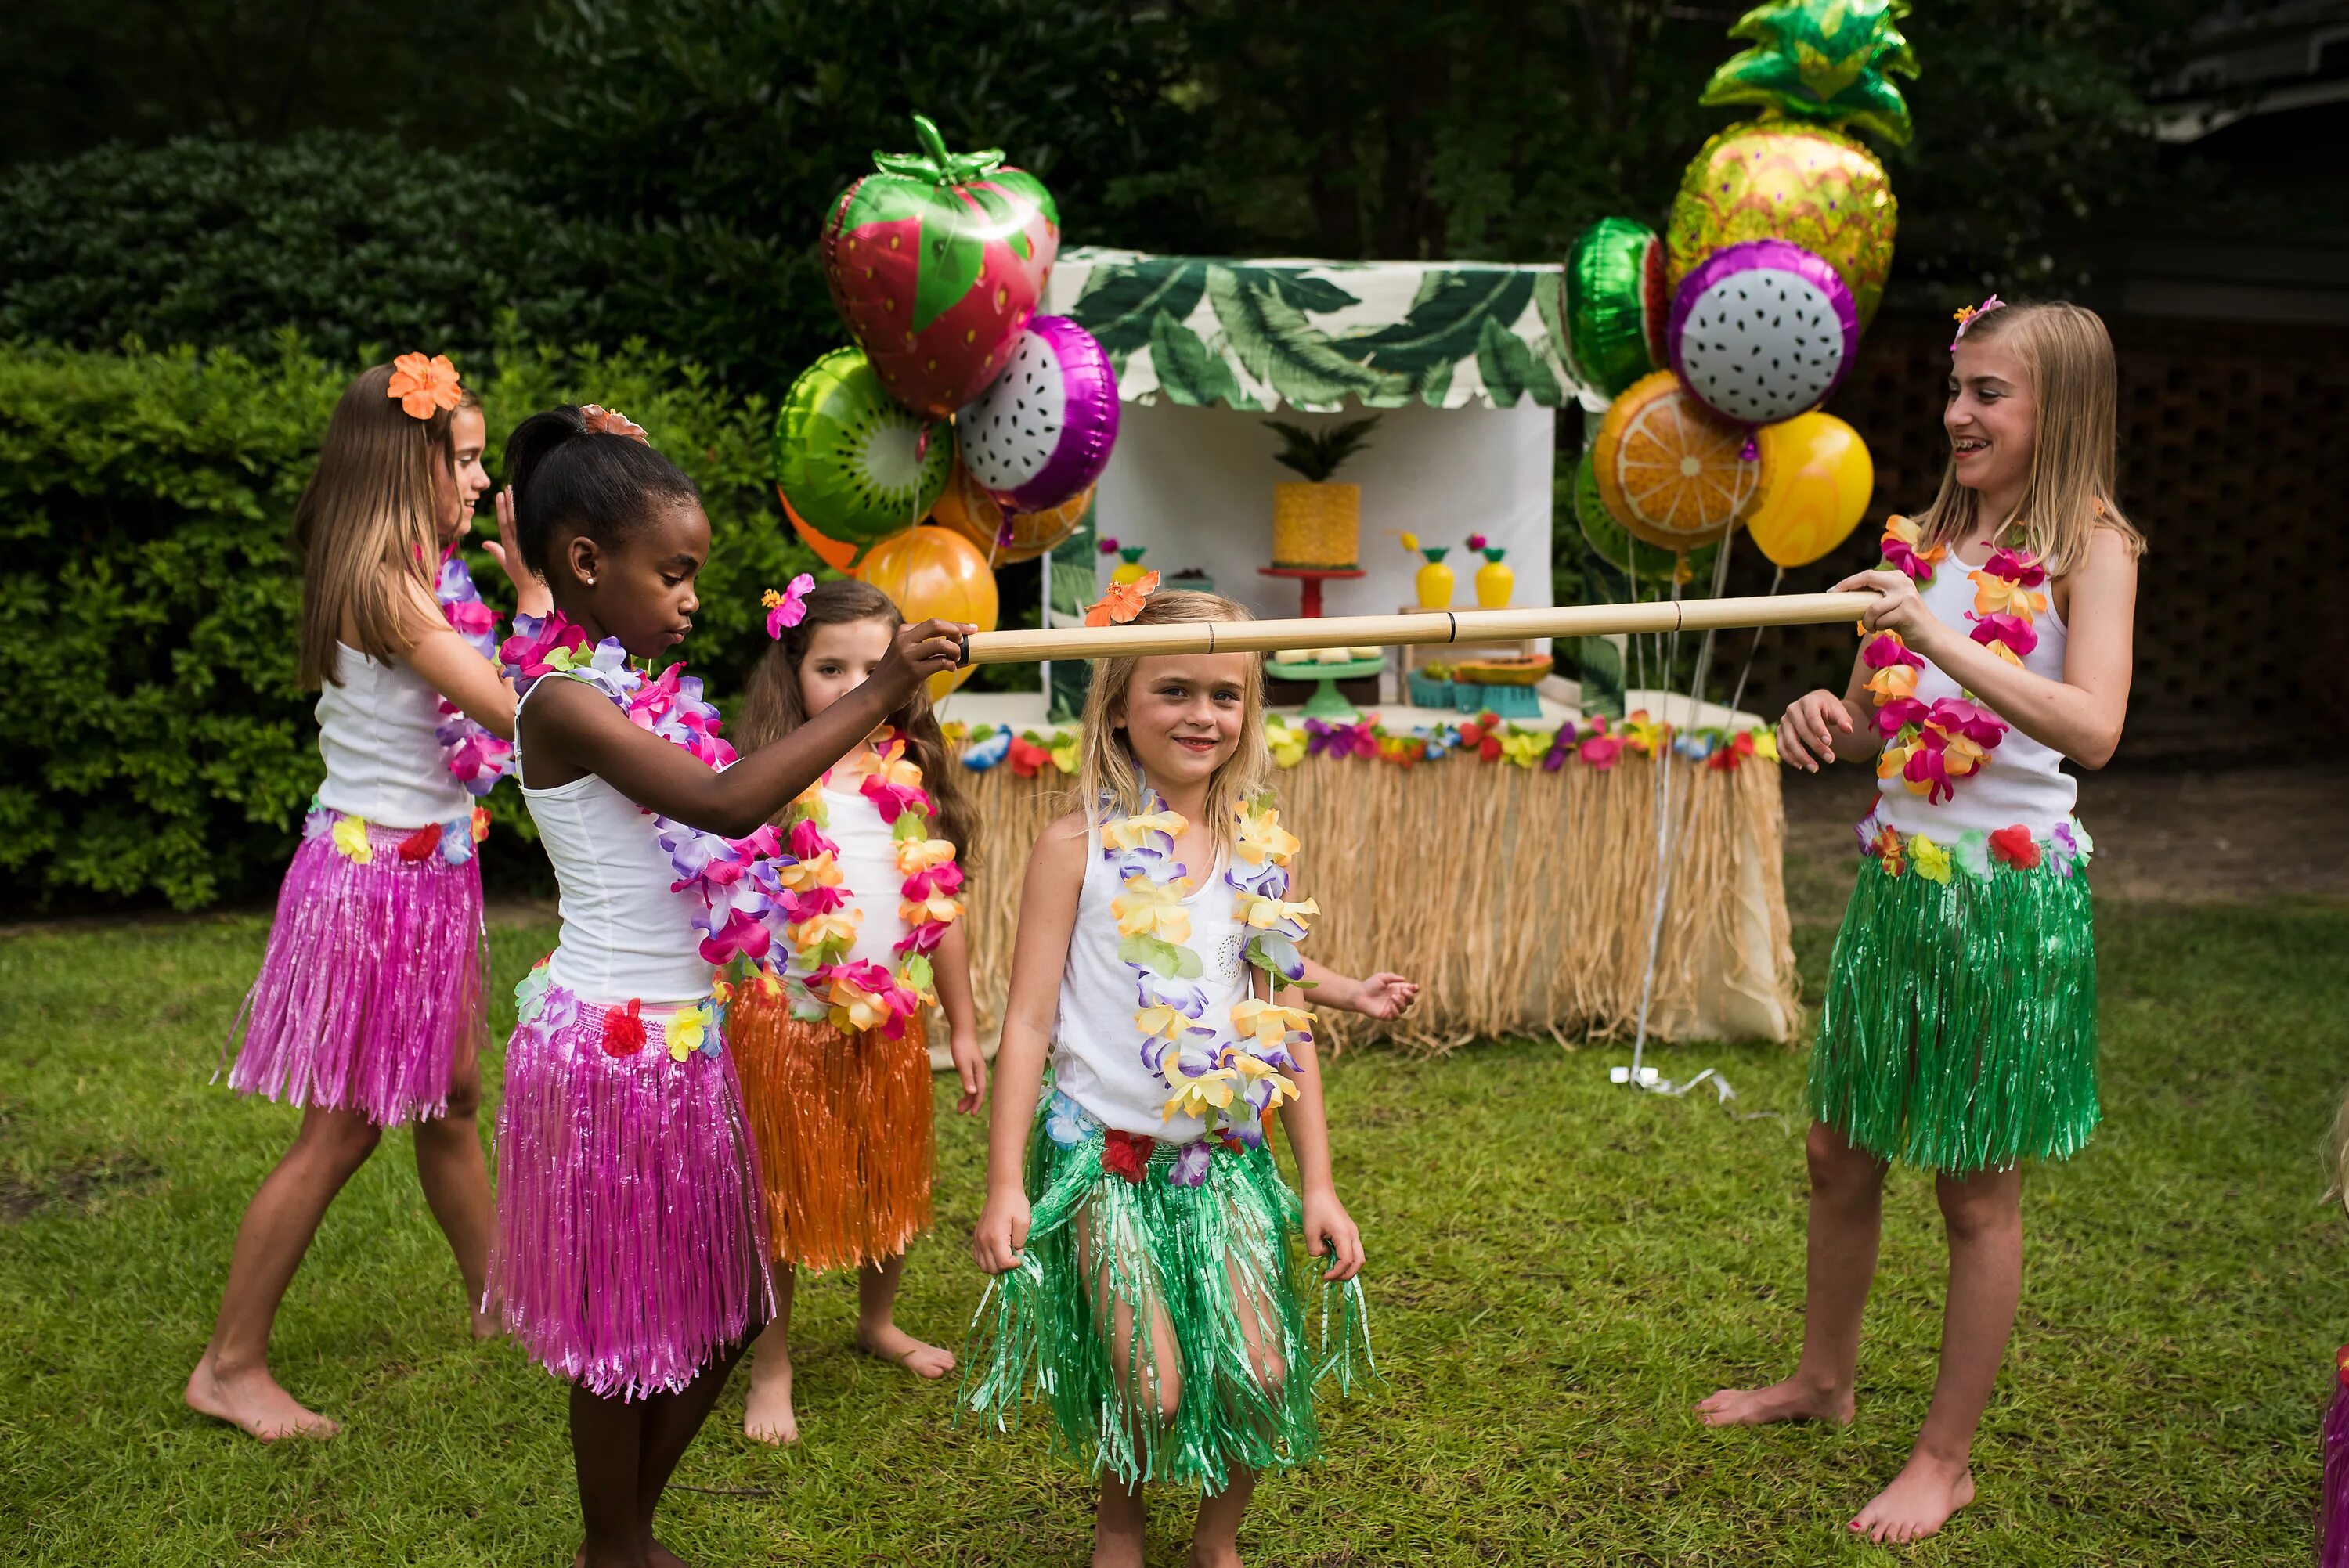 Луау. Декорации Гавайи Luau Party. Гавайская вечеринка Луау. Вечеринка в гавайском стиле. Гавайская вечеринка для детей.